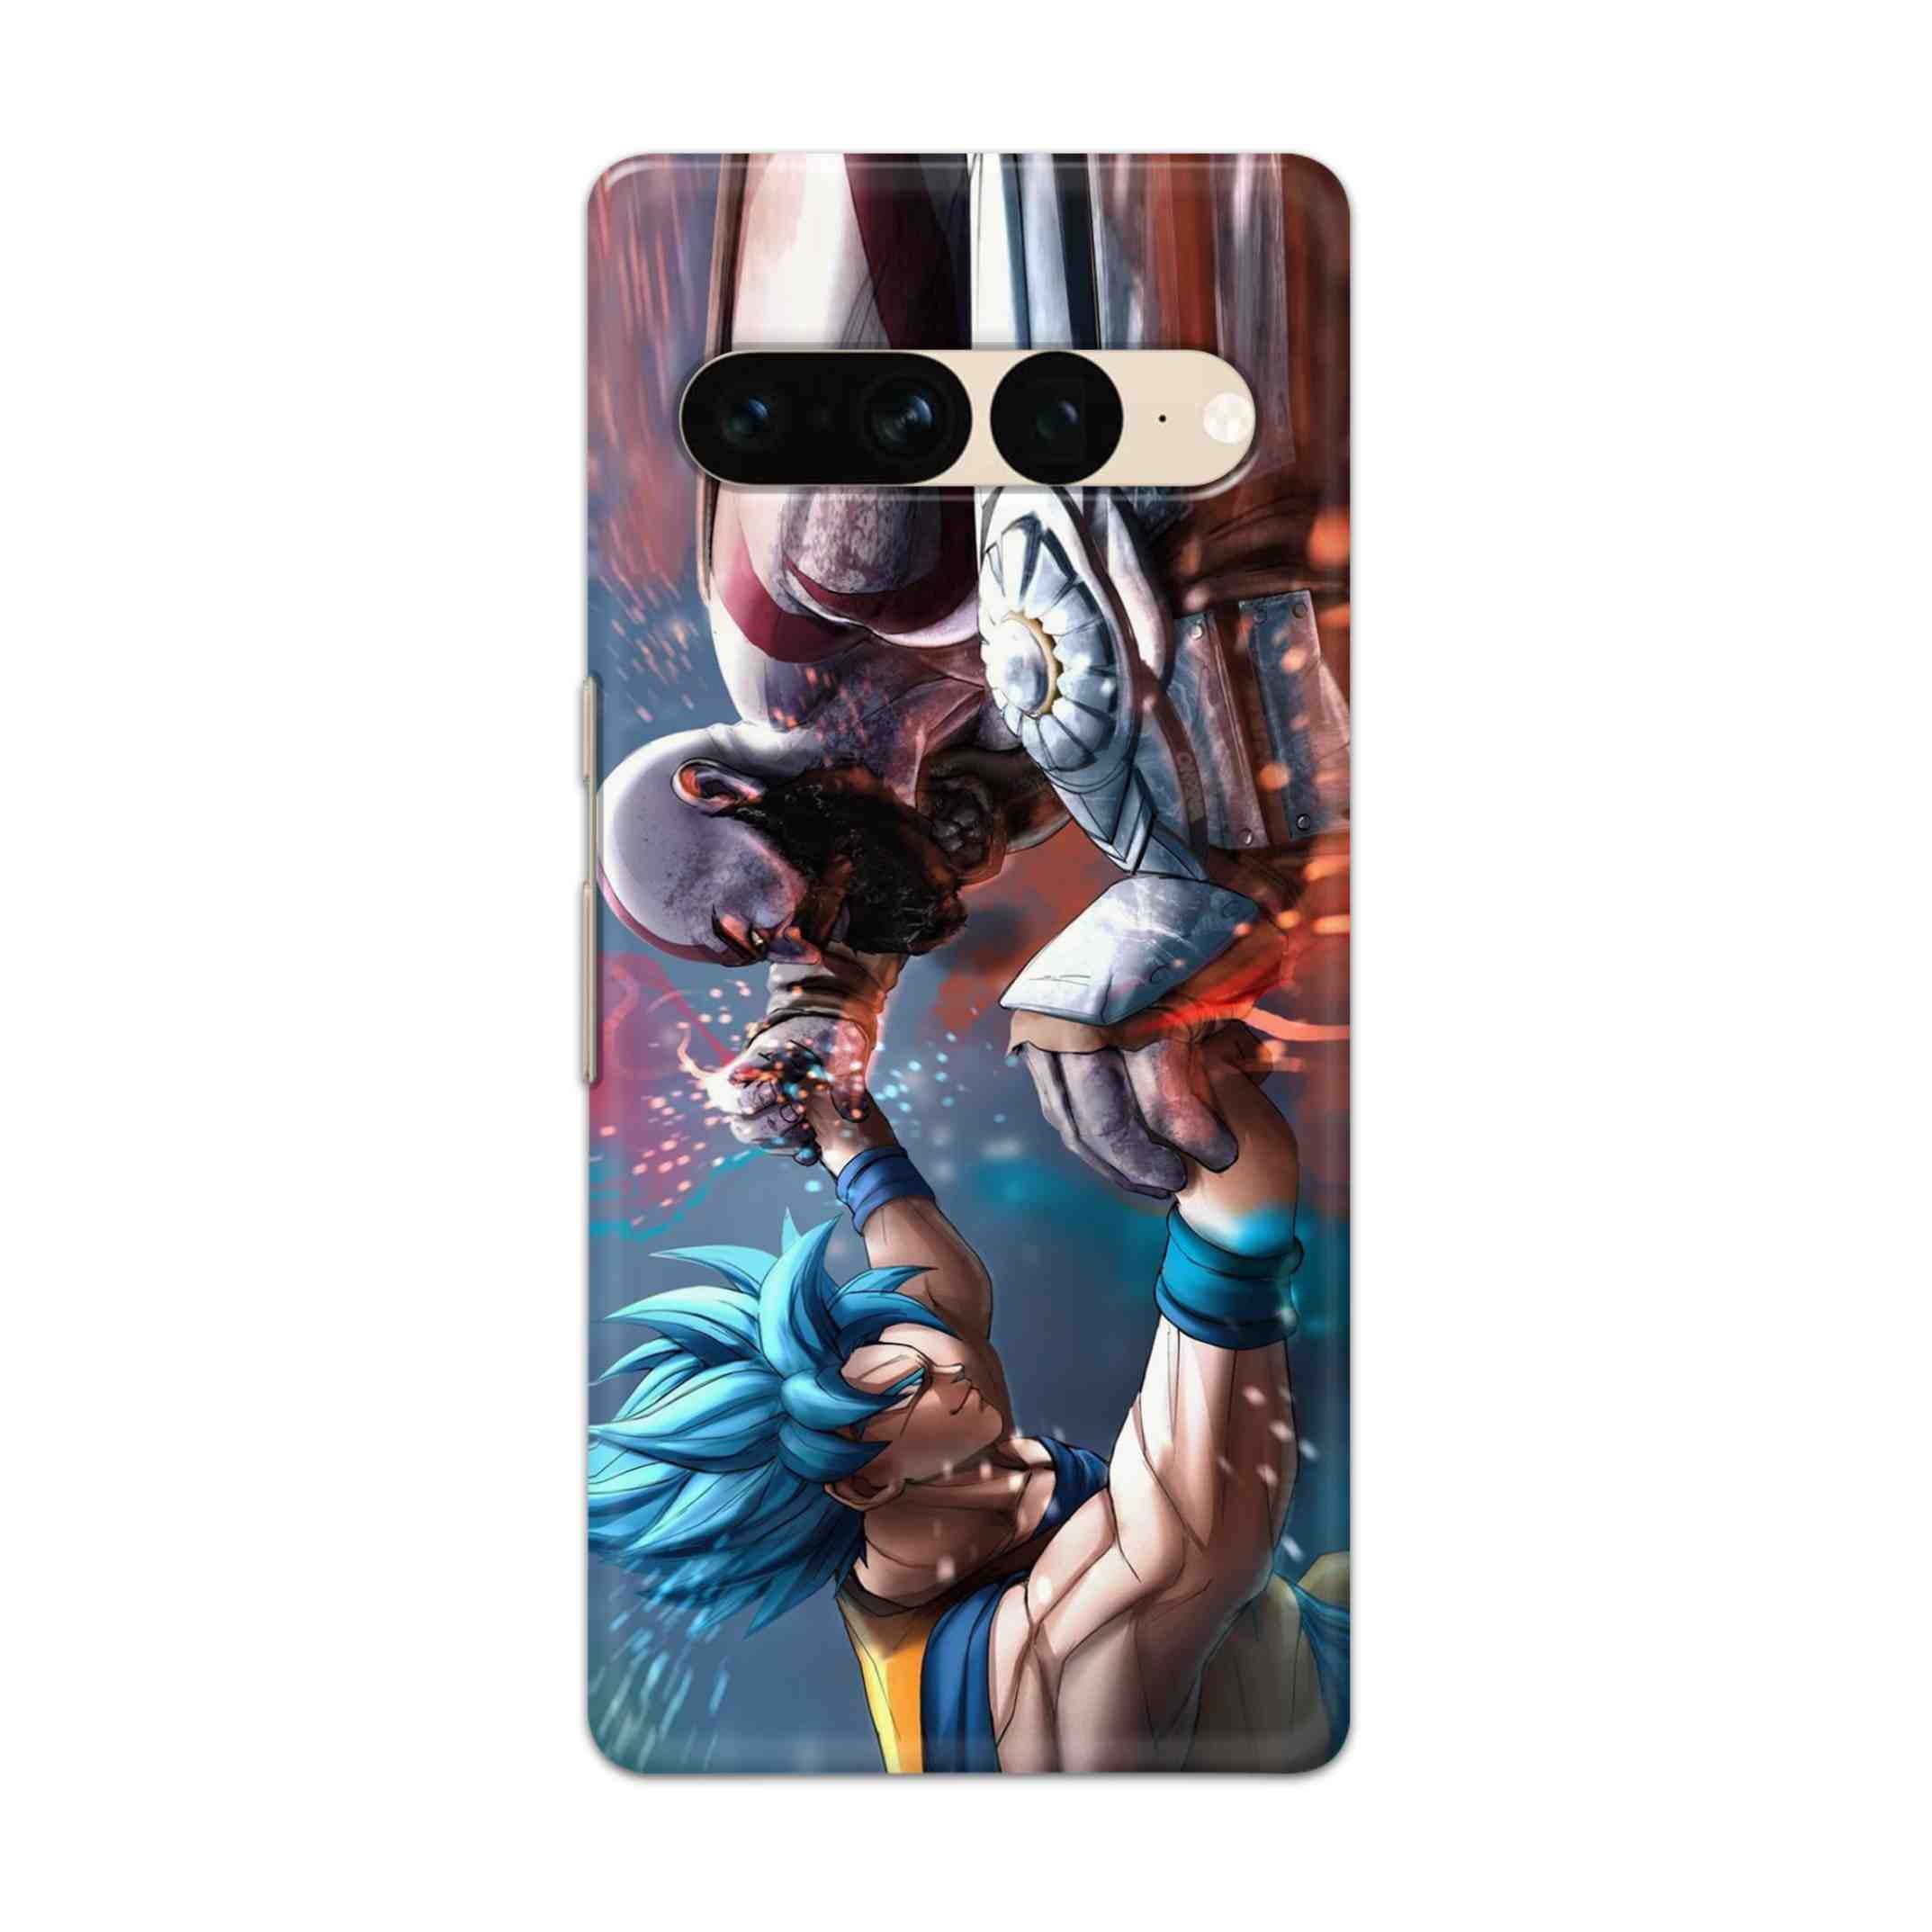 Buy Goku Vs Kratos Hard Back Mobile Phone Case Cover For Google Pixel 7 Pro Online